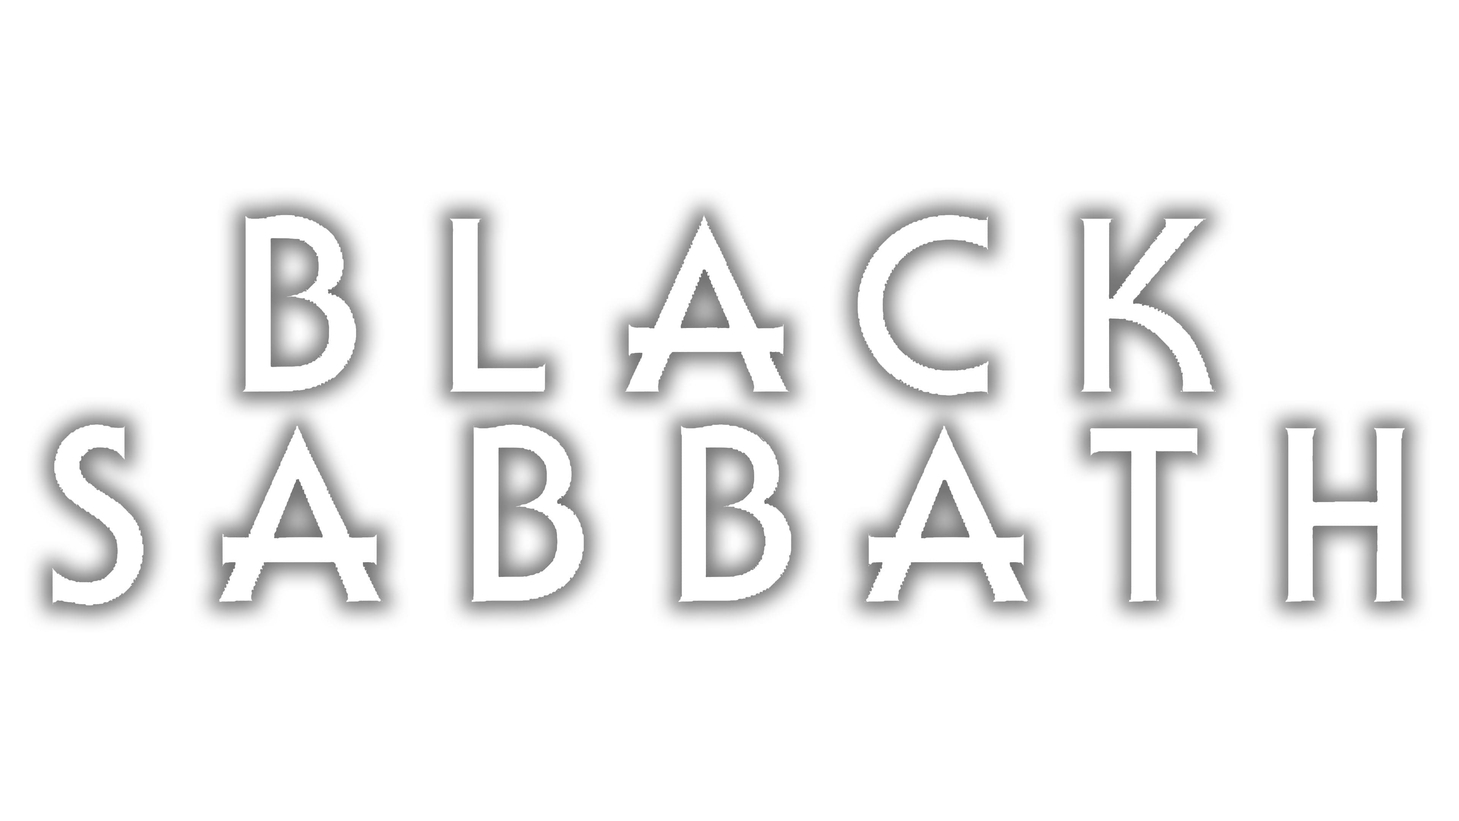 Black sabbath sign